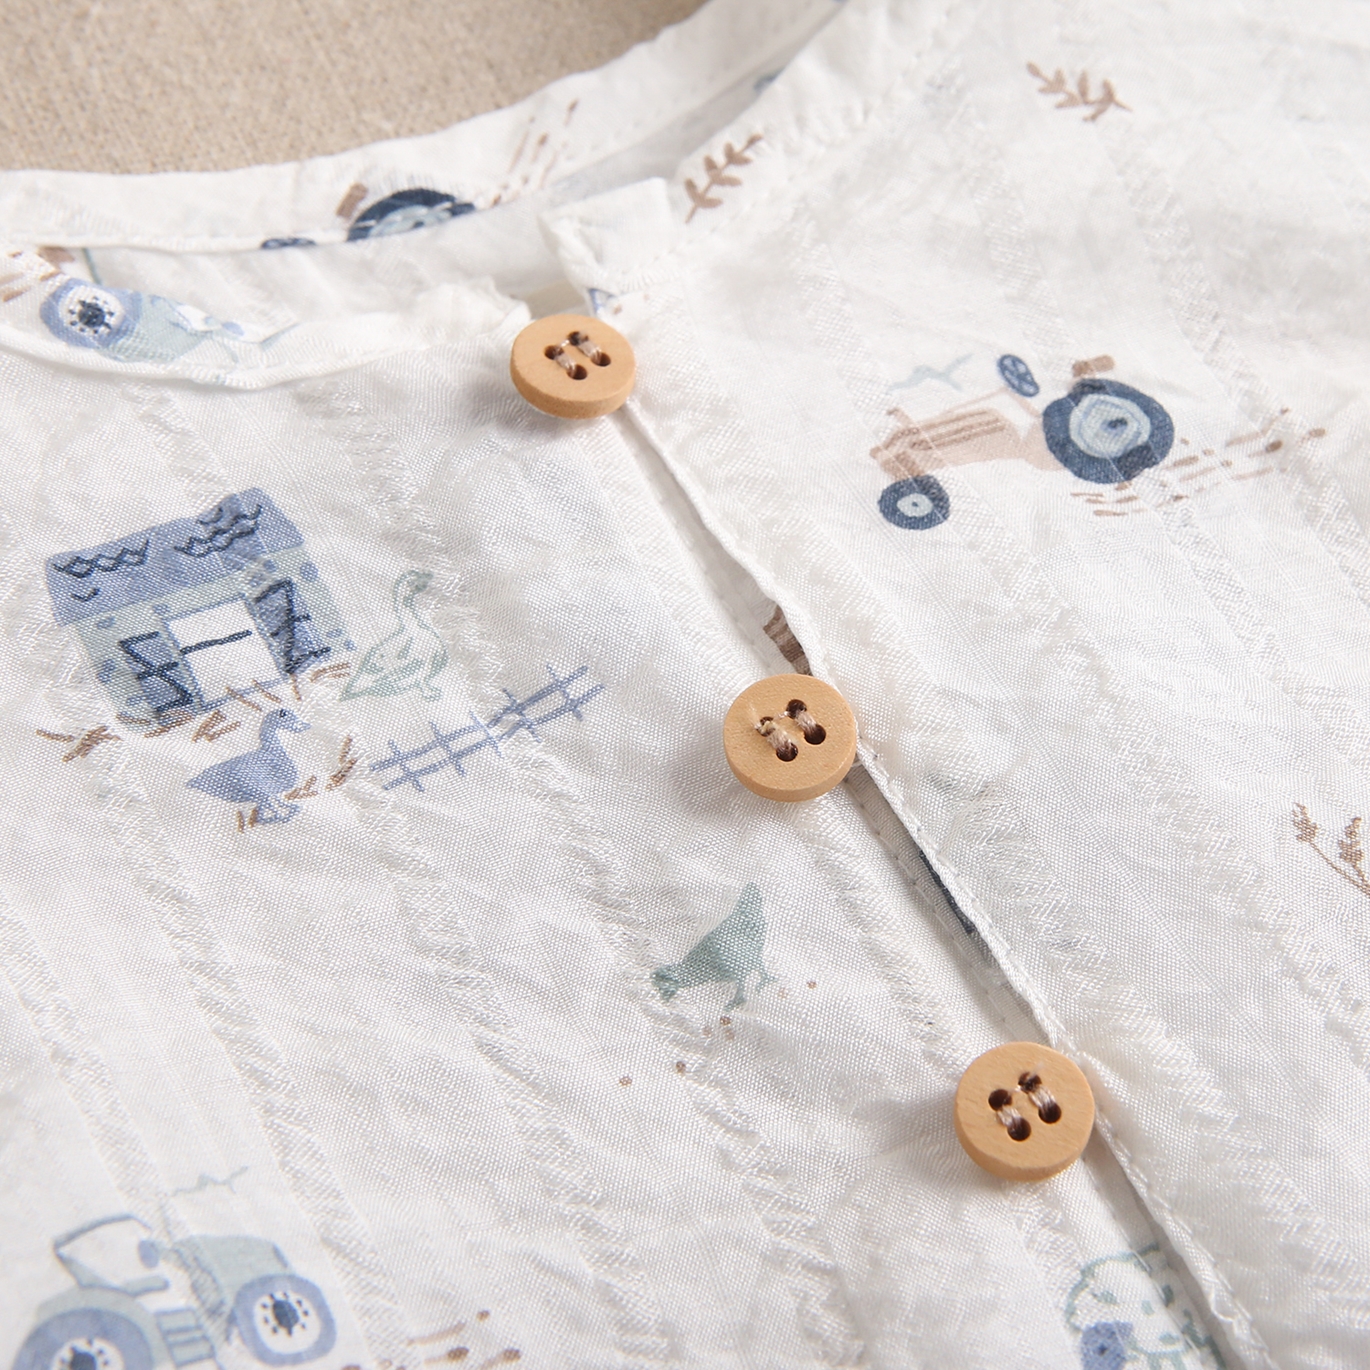 Imagen de Conjunto de bebé niño con camisa blanca estampada y pantalón azul denim